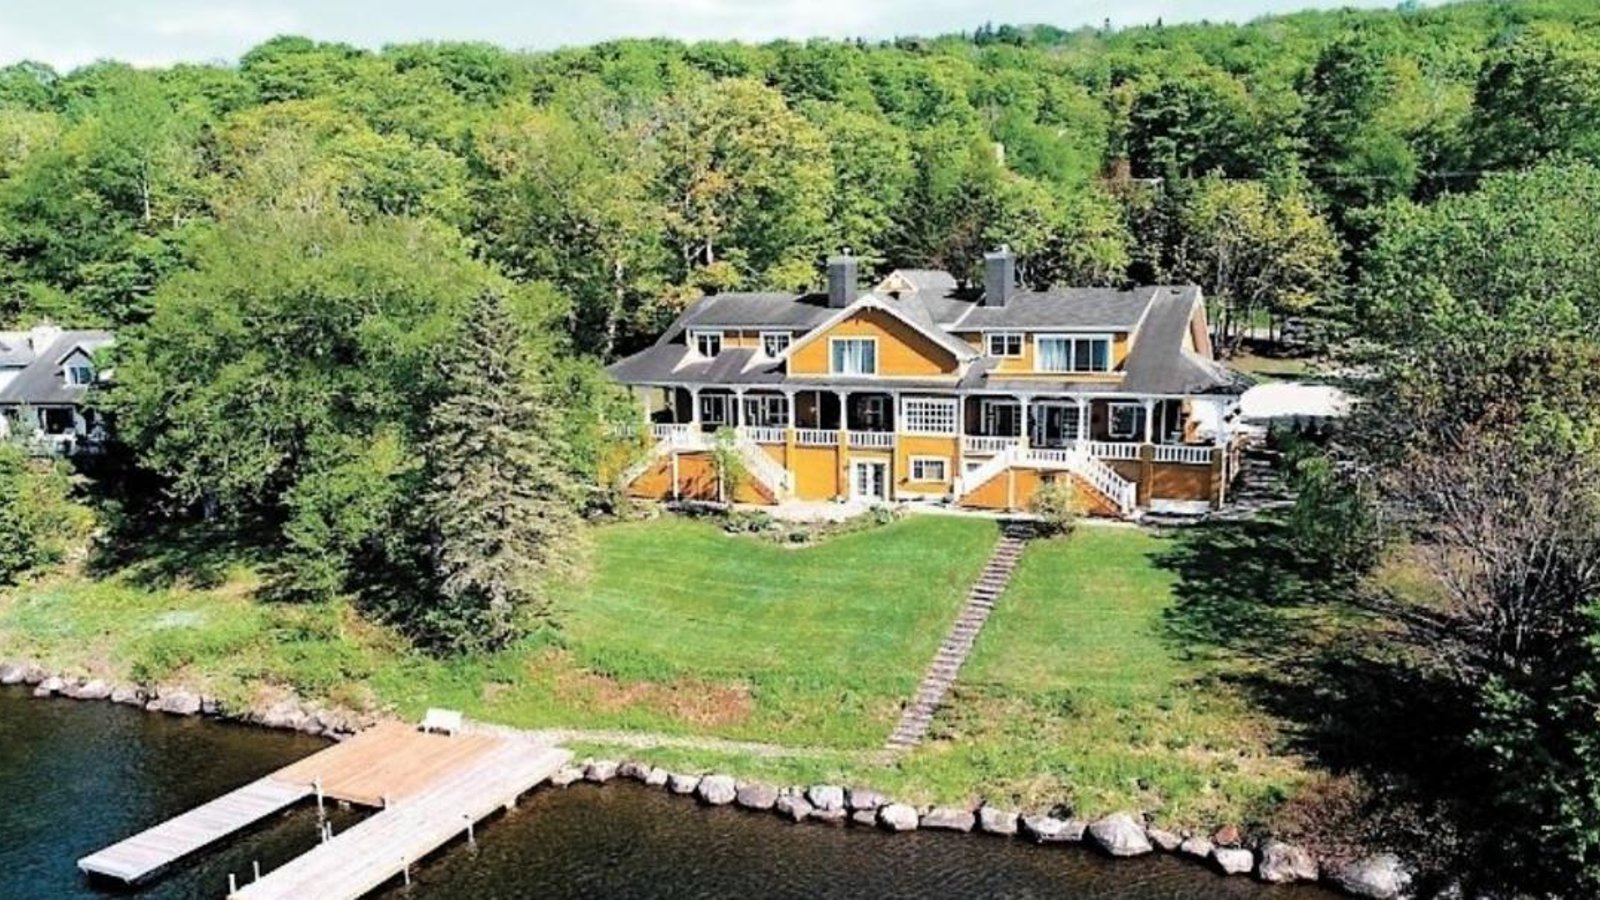 Un joueur de hockey achète une maison de 2 millions $ à Lac-Beauport pour la détruire